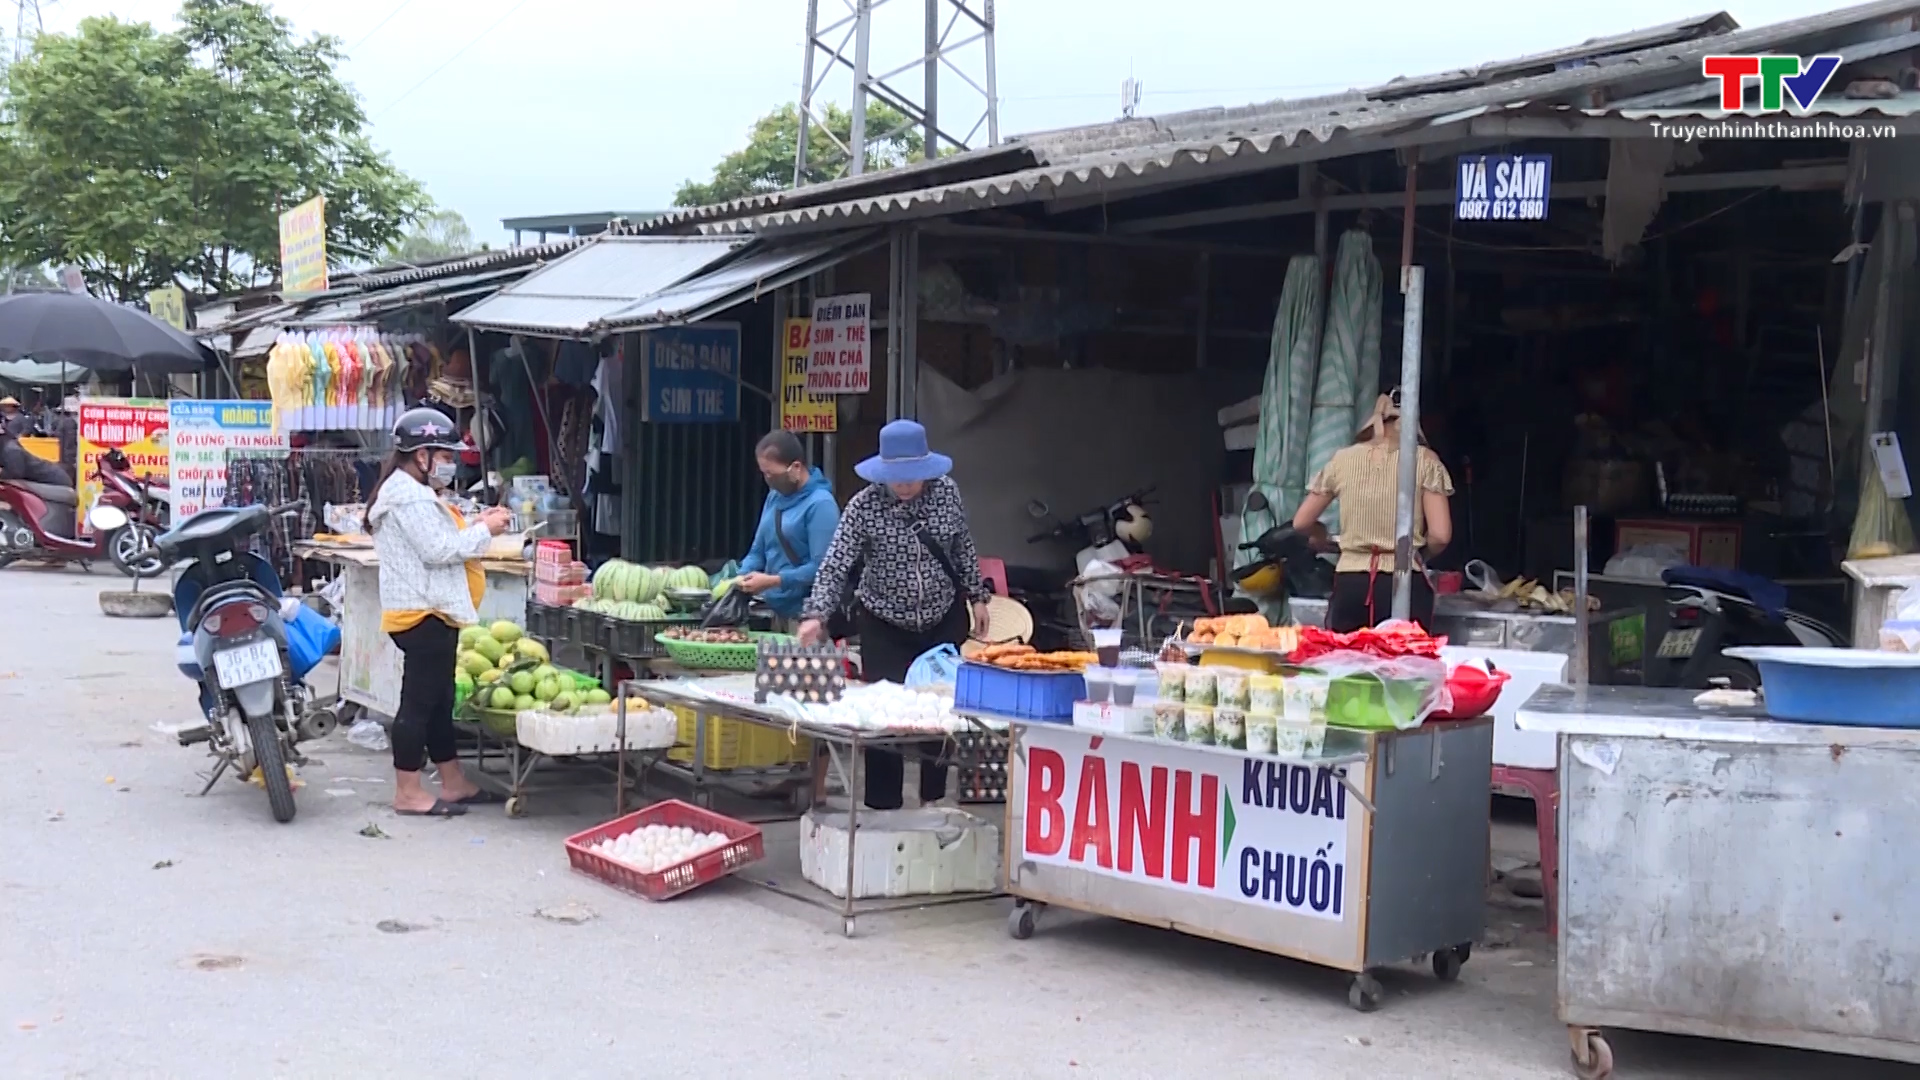 Thực phẩm bán tại Khu công nghiệp Hoàng Long, thành phố Thanh Hóa tiềm ẩn nguy cơ mất an toàn - Ảnh 5.